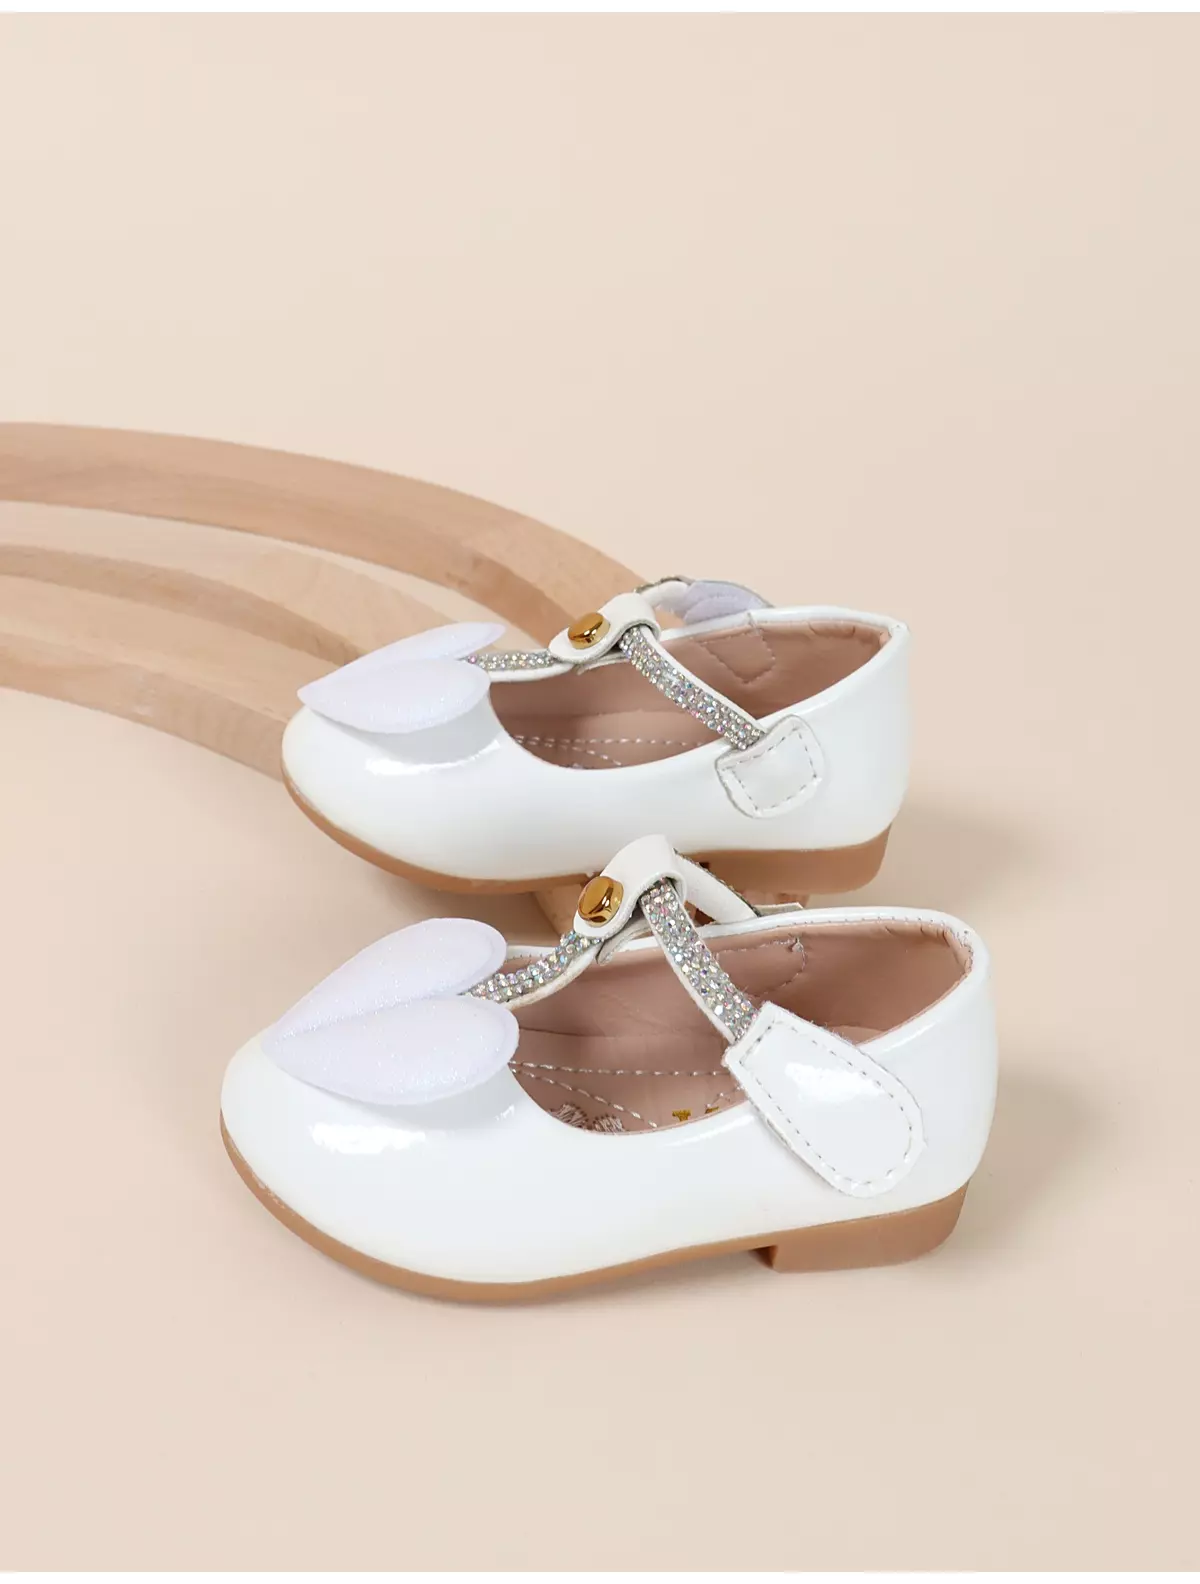 Pantofiori eleganti Cairo model alb